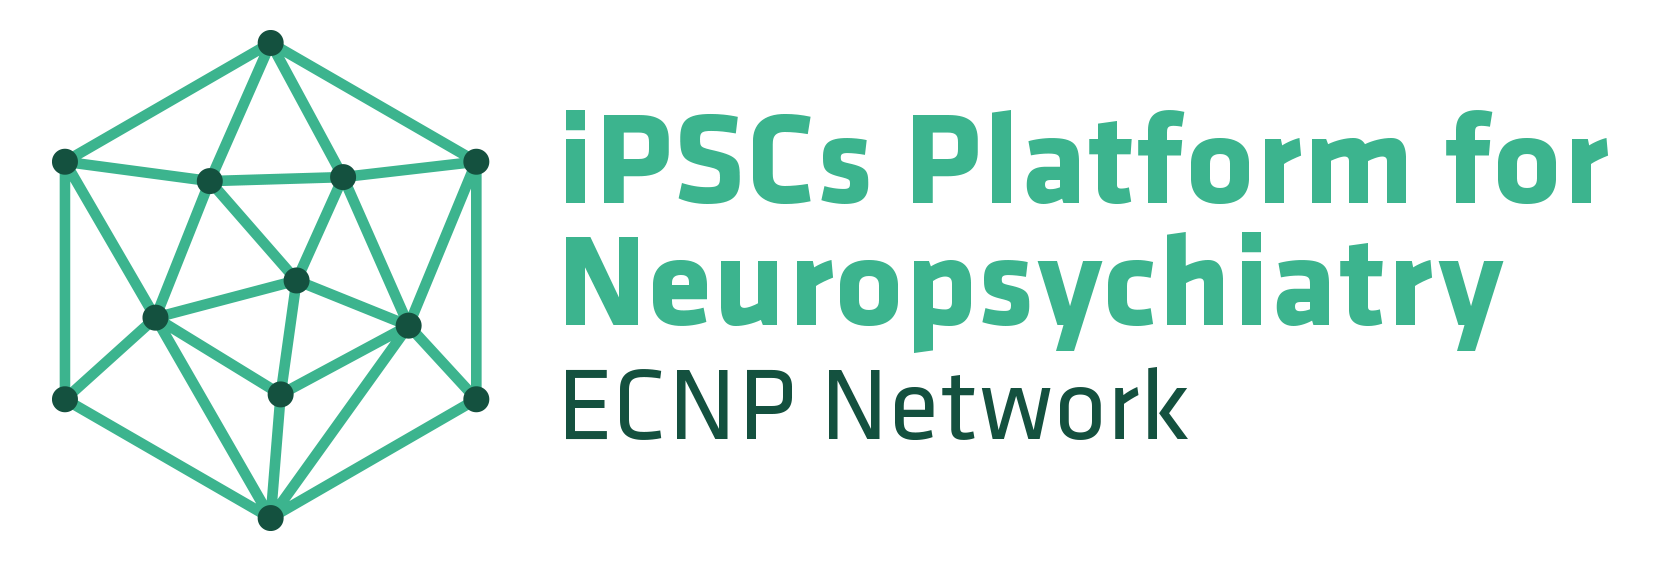 ECNP Network Logo